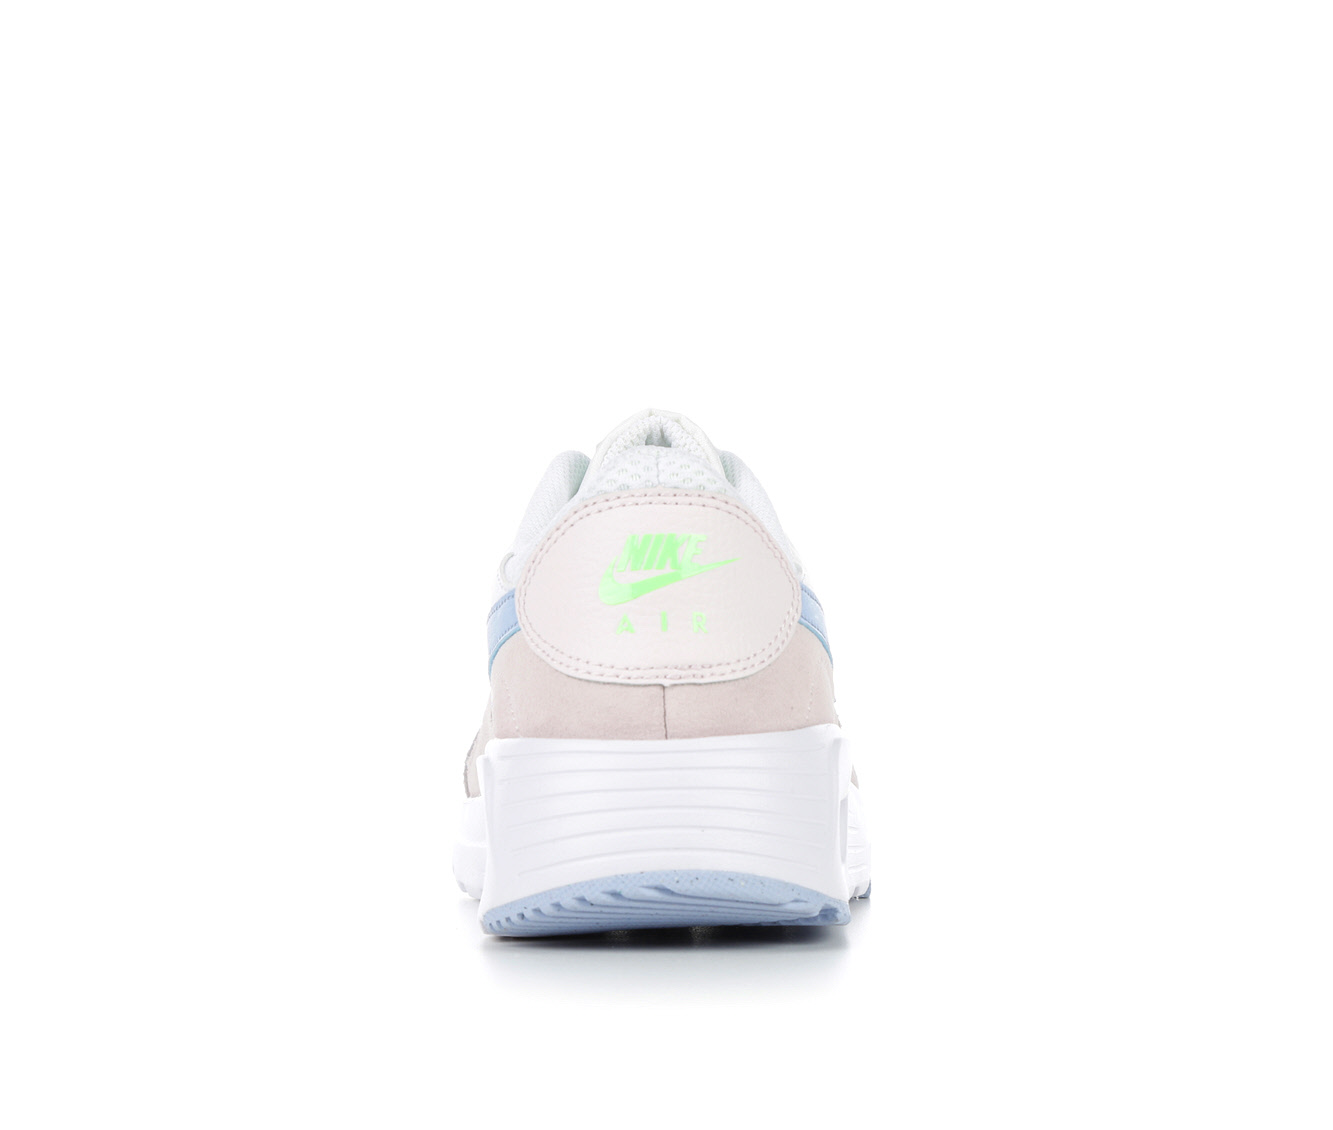 Nike Air Max Sneakers & Slides | Shoe Carnival